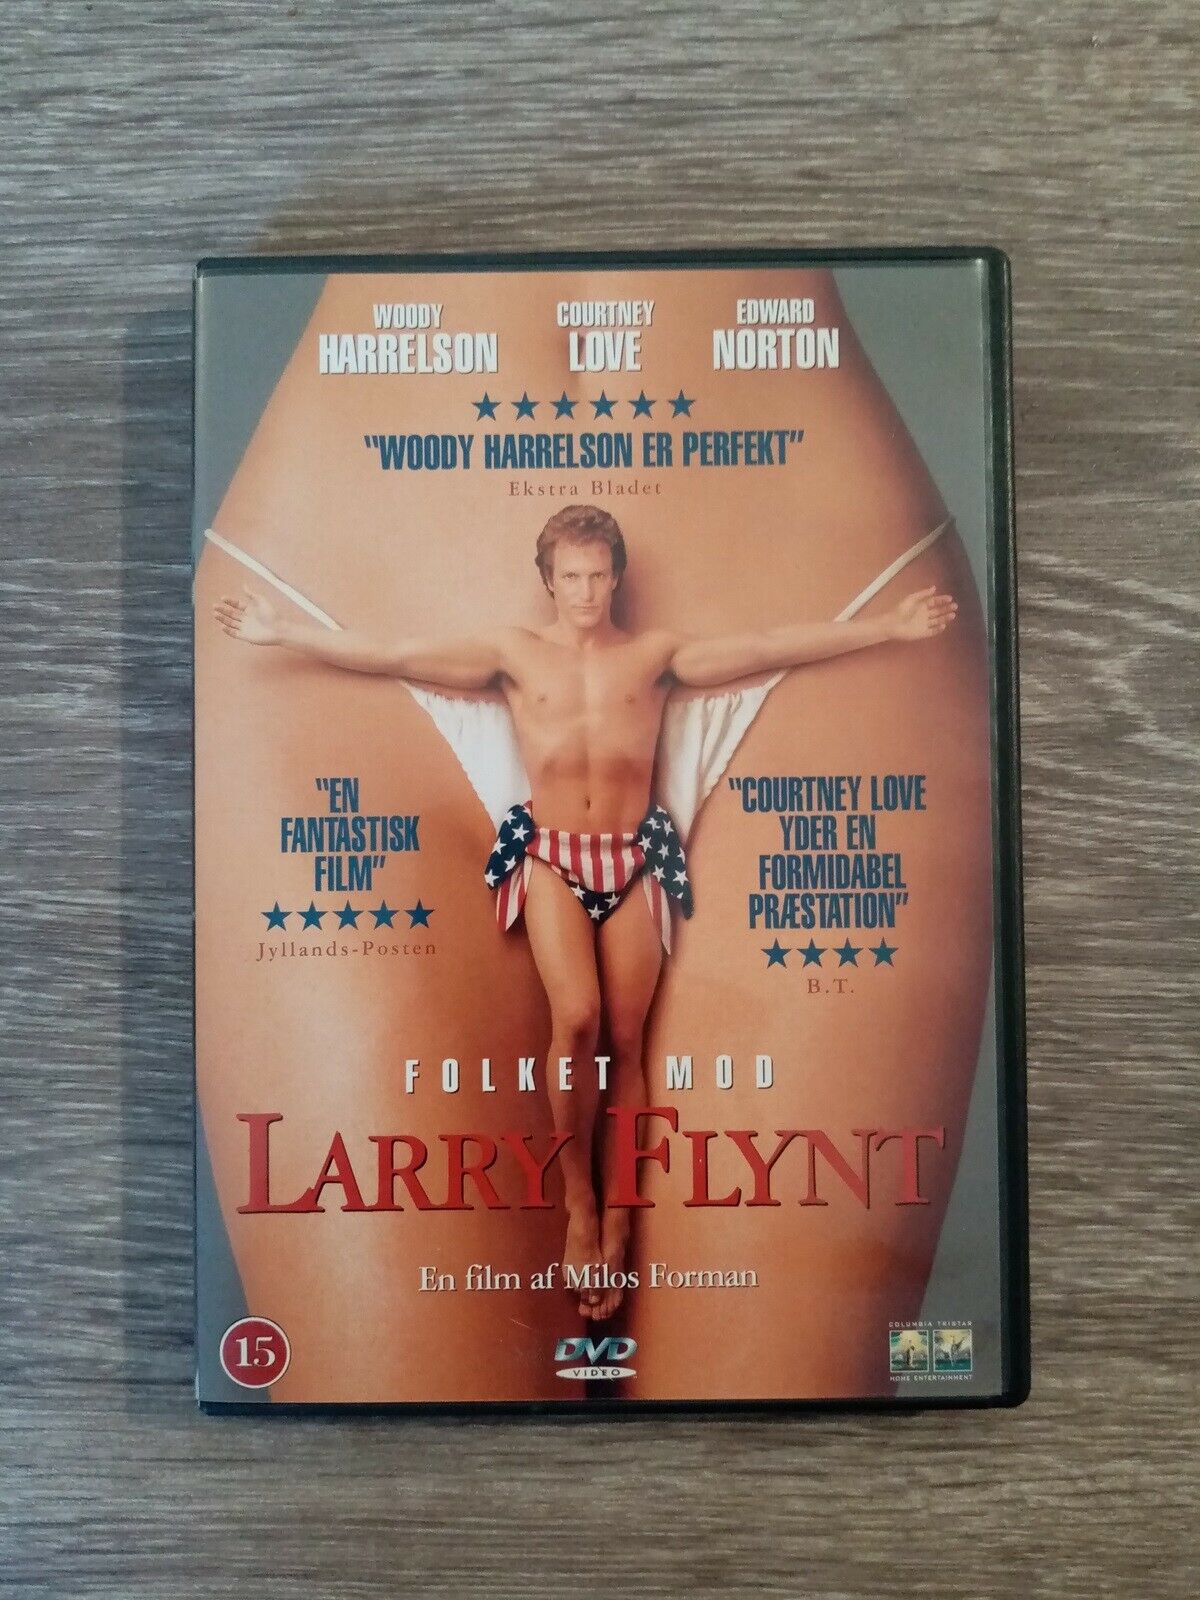 Folket mod Larry Flynt, DVD, - dba.dk - Køb Salg af Nyt og Brugt